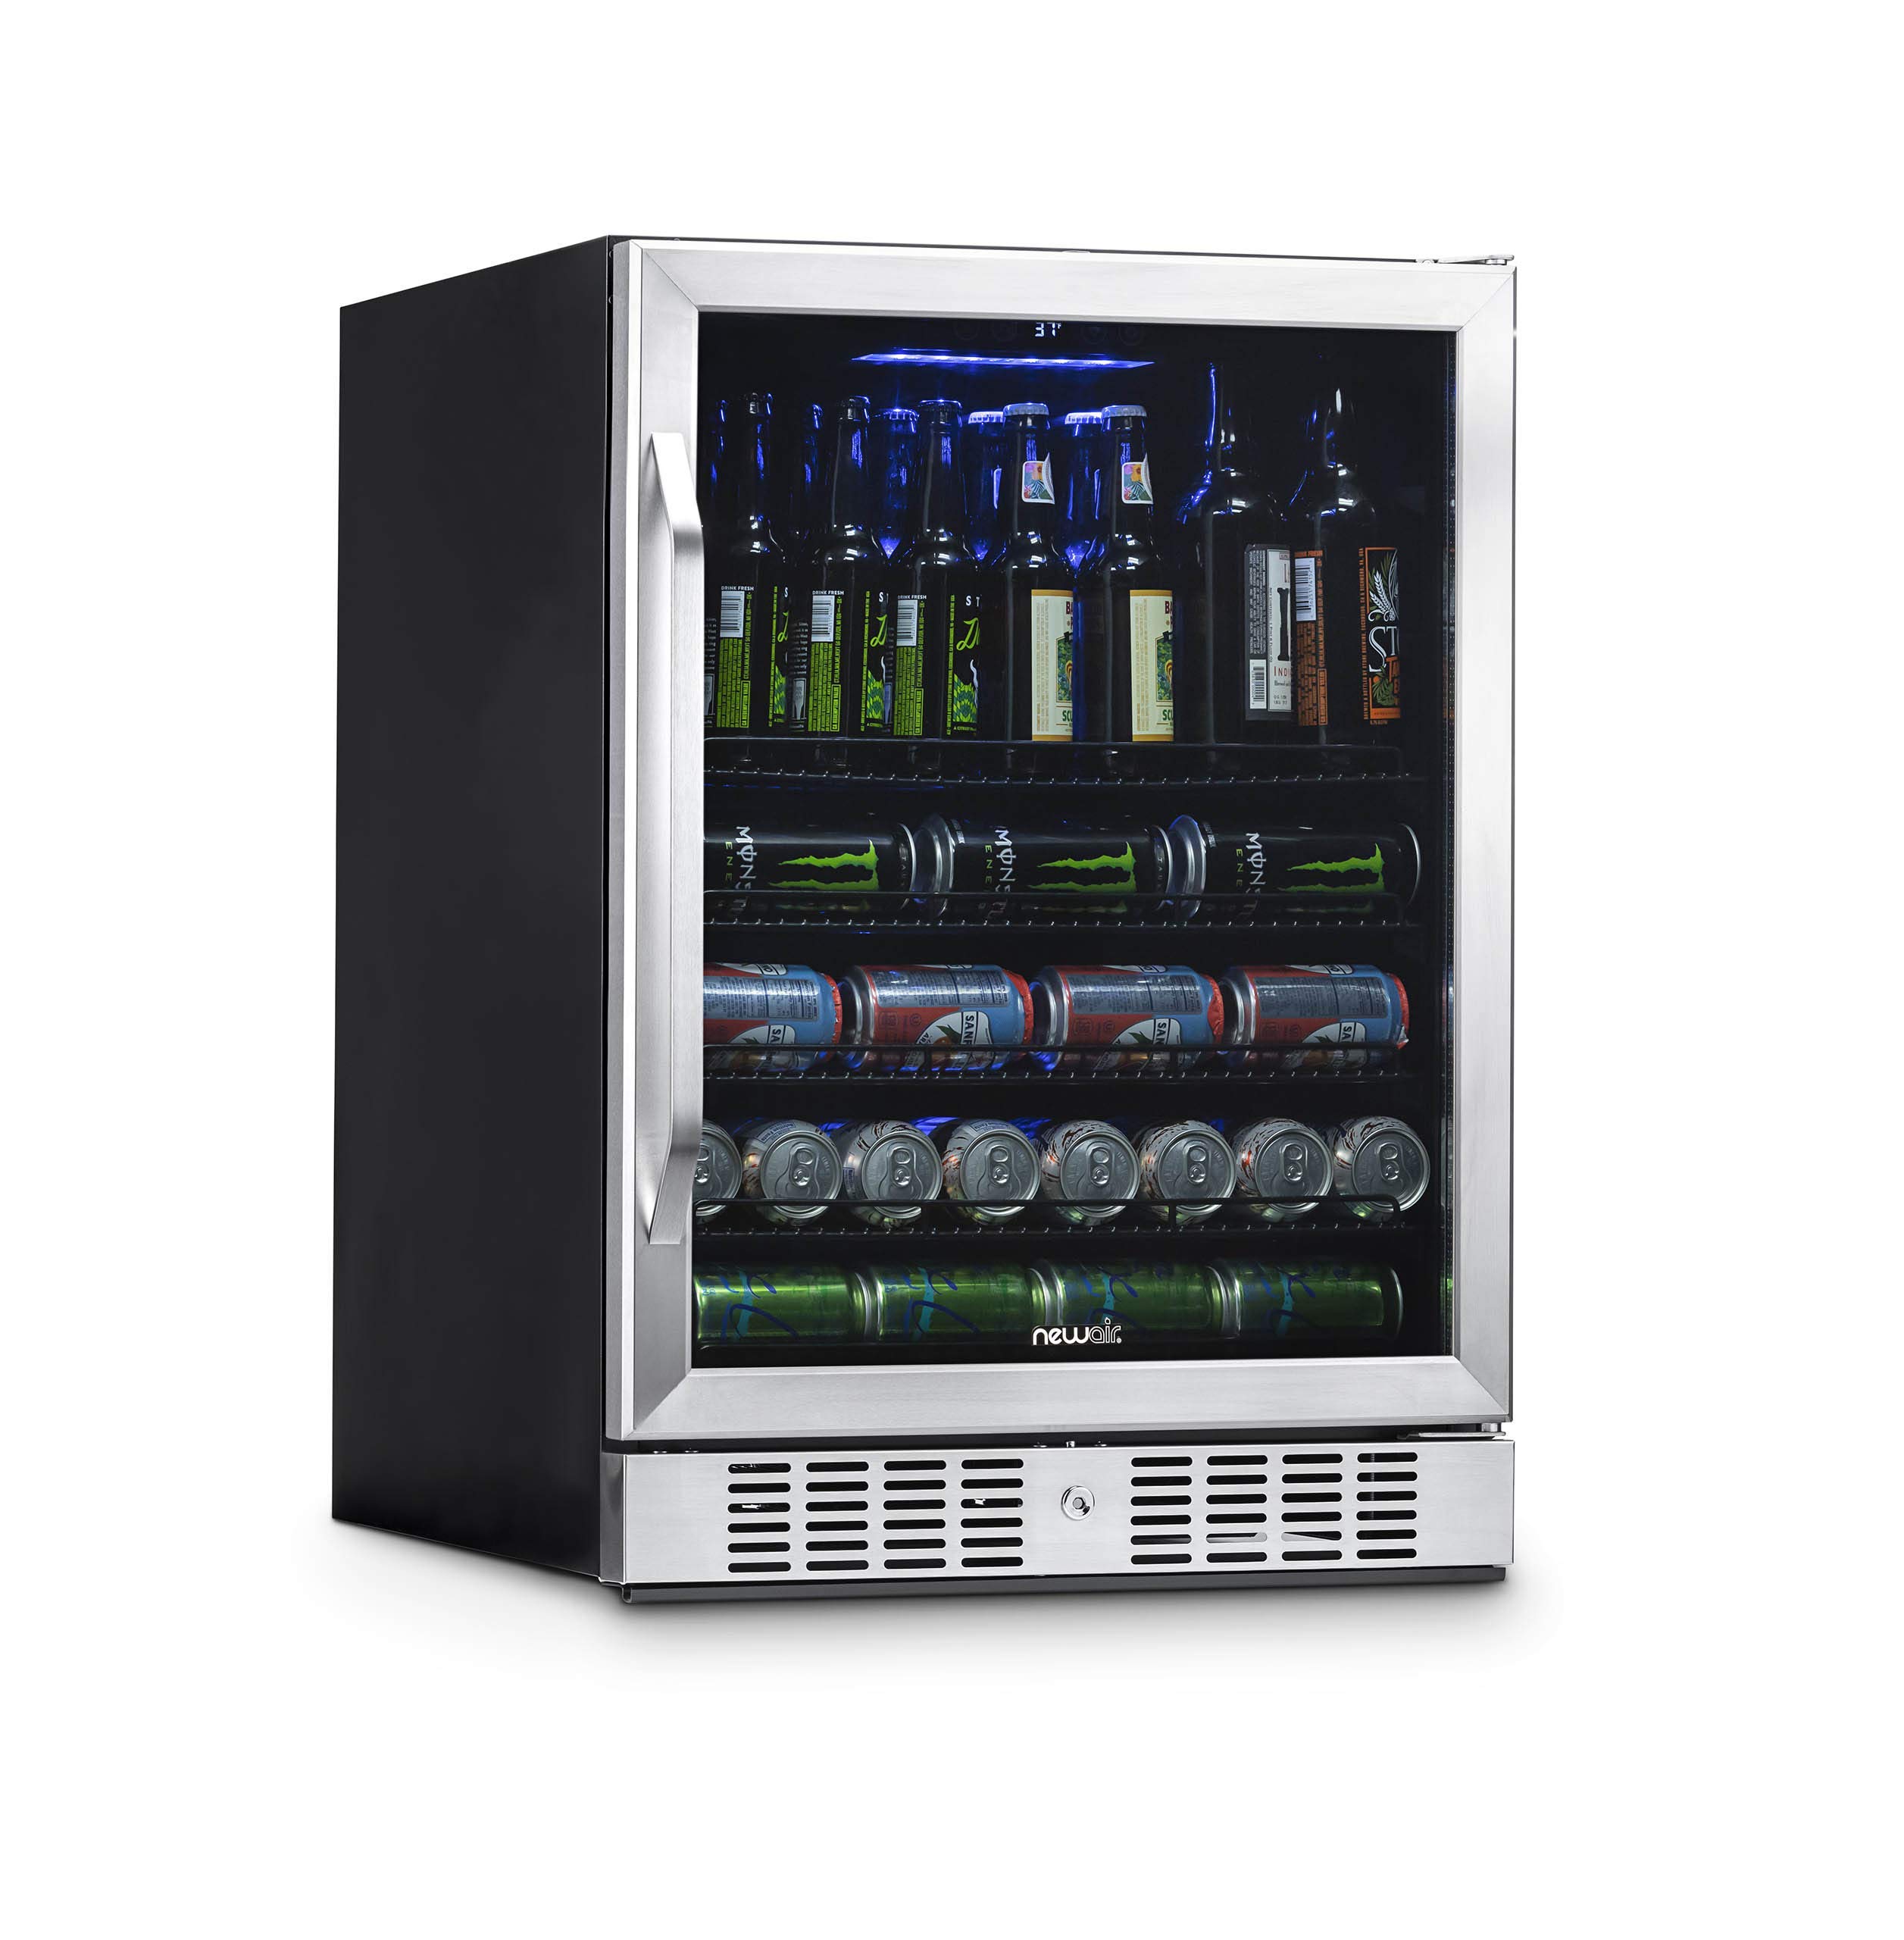  NewAir 177캔 용량의 대형 음료 냉장고 냉각기 - 뒤집을 수 있는 경첩 유리 도어 및 하단 키 잠금 장치가 있는 미니 바 맥주 냉장고 - 37F까지 냉각 - 스테인...